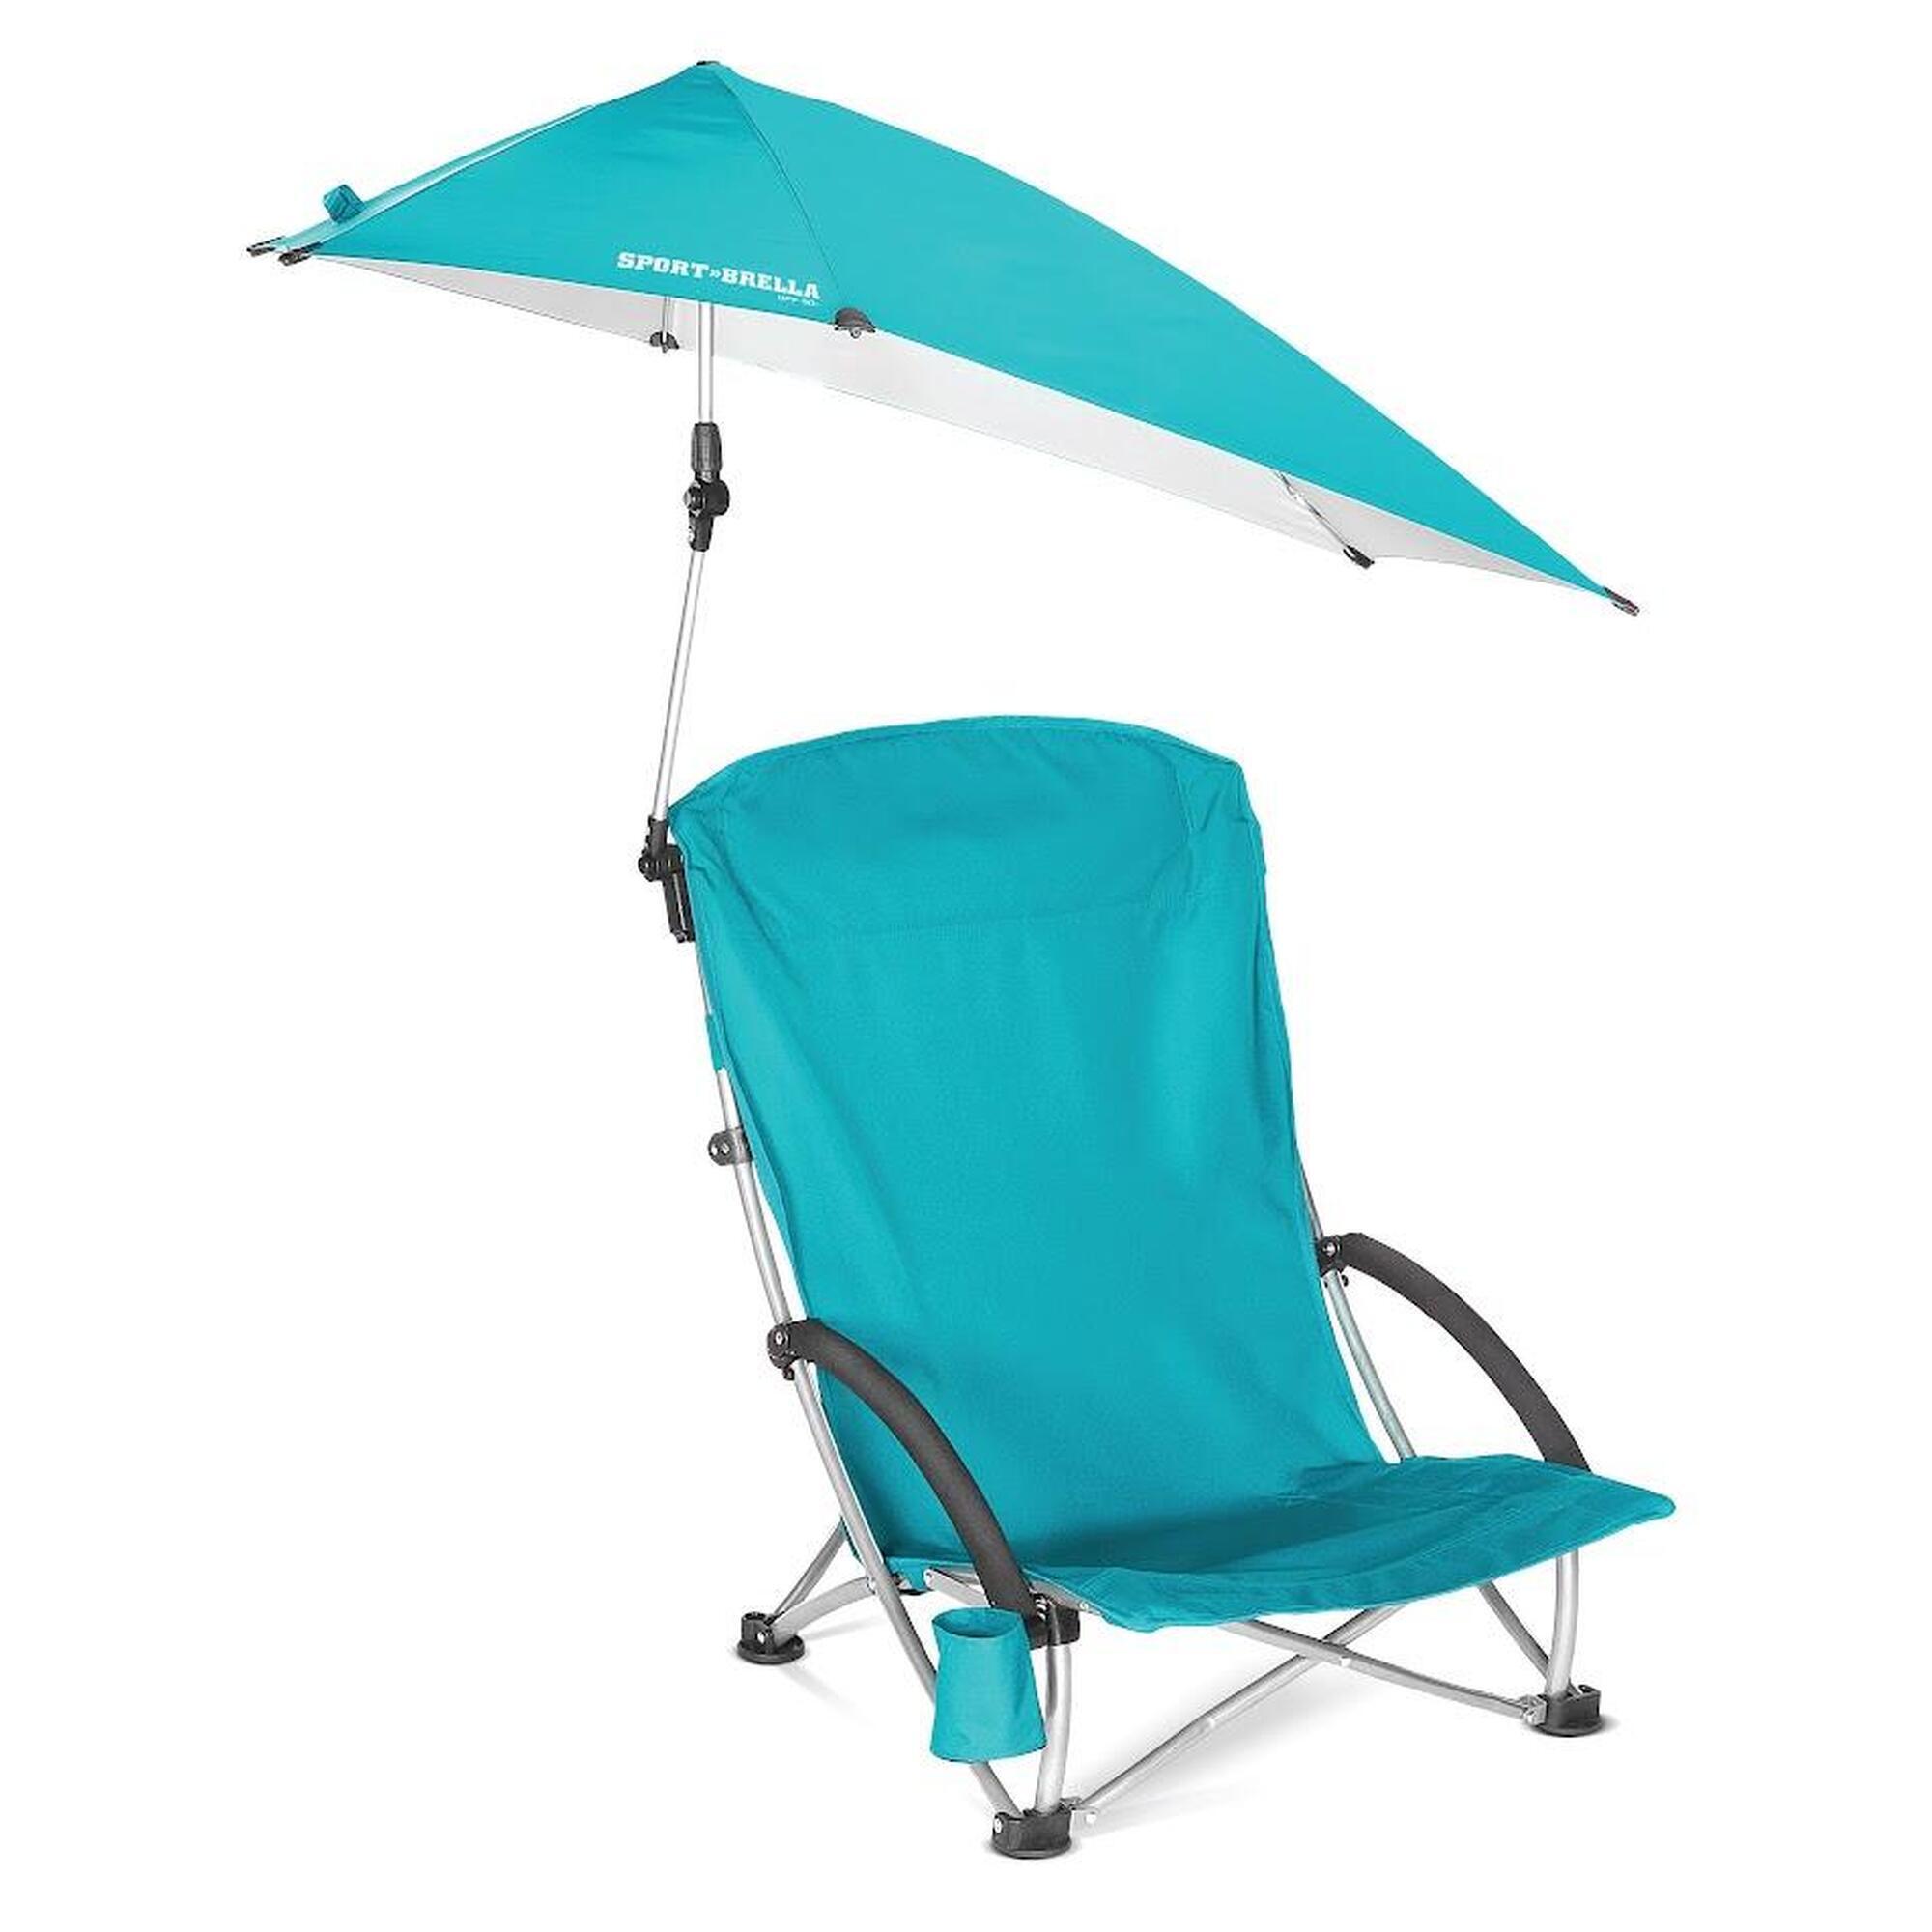 Silla de playa: Confort con malla refrescante, protección solar UPF 50+